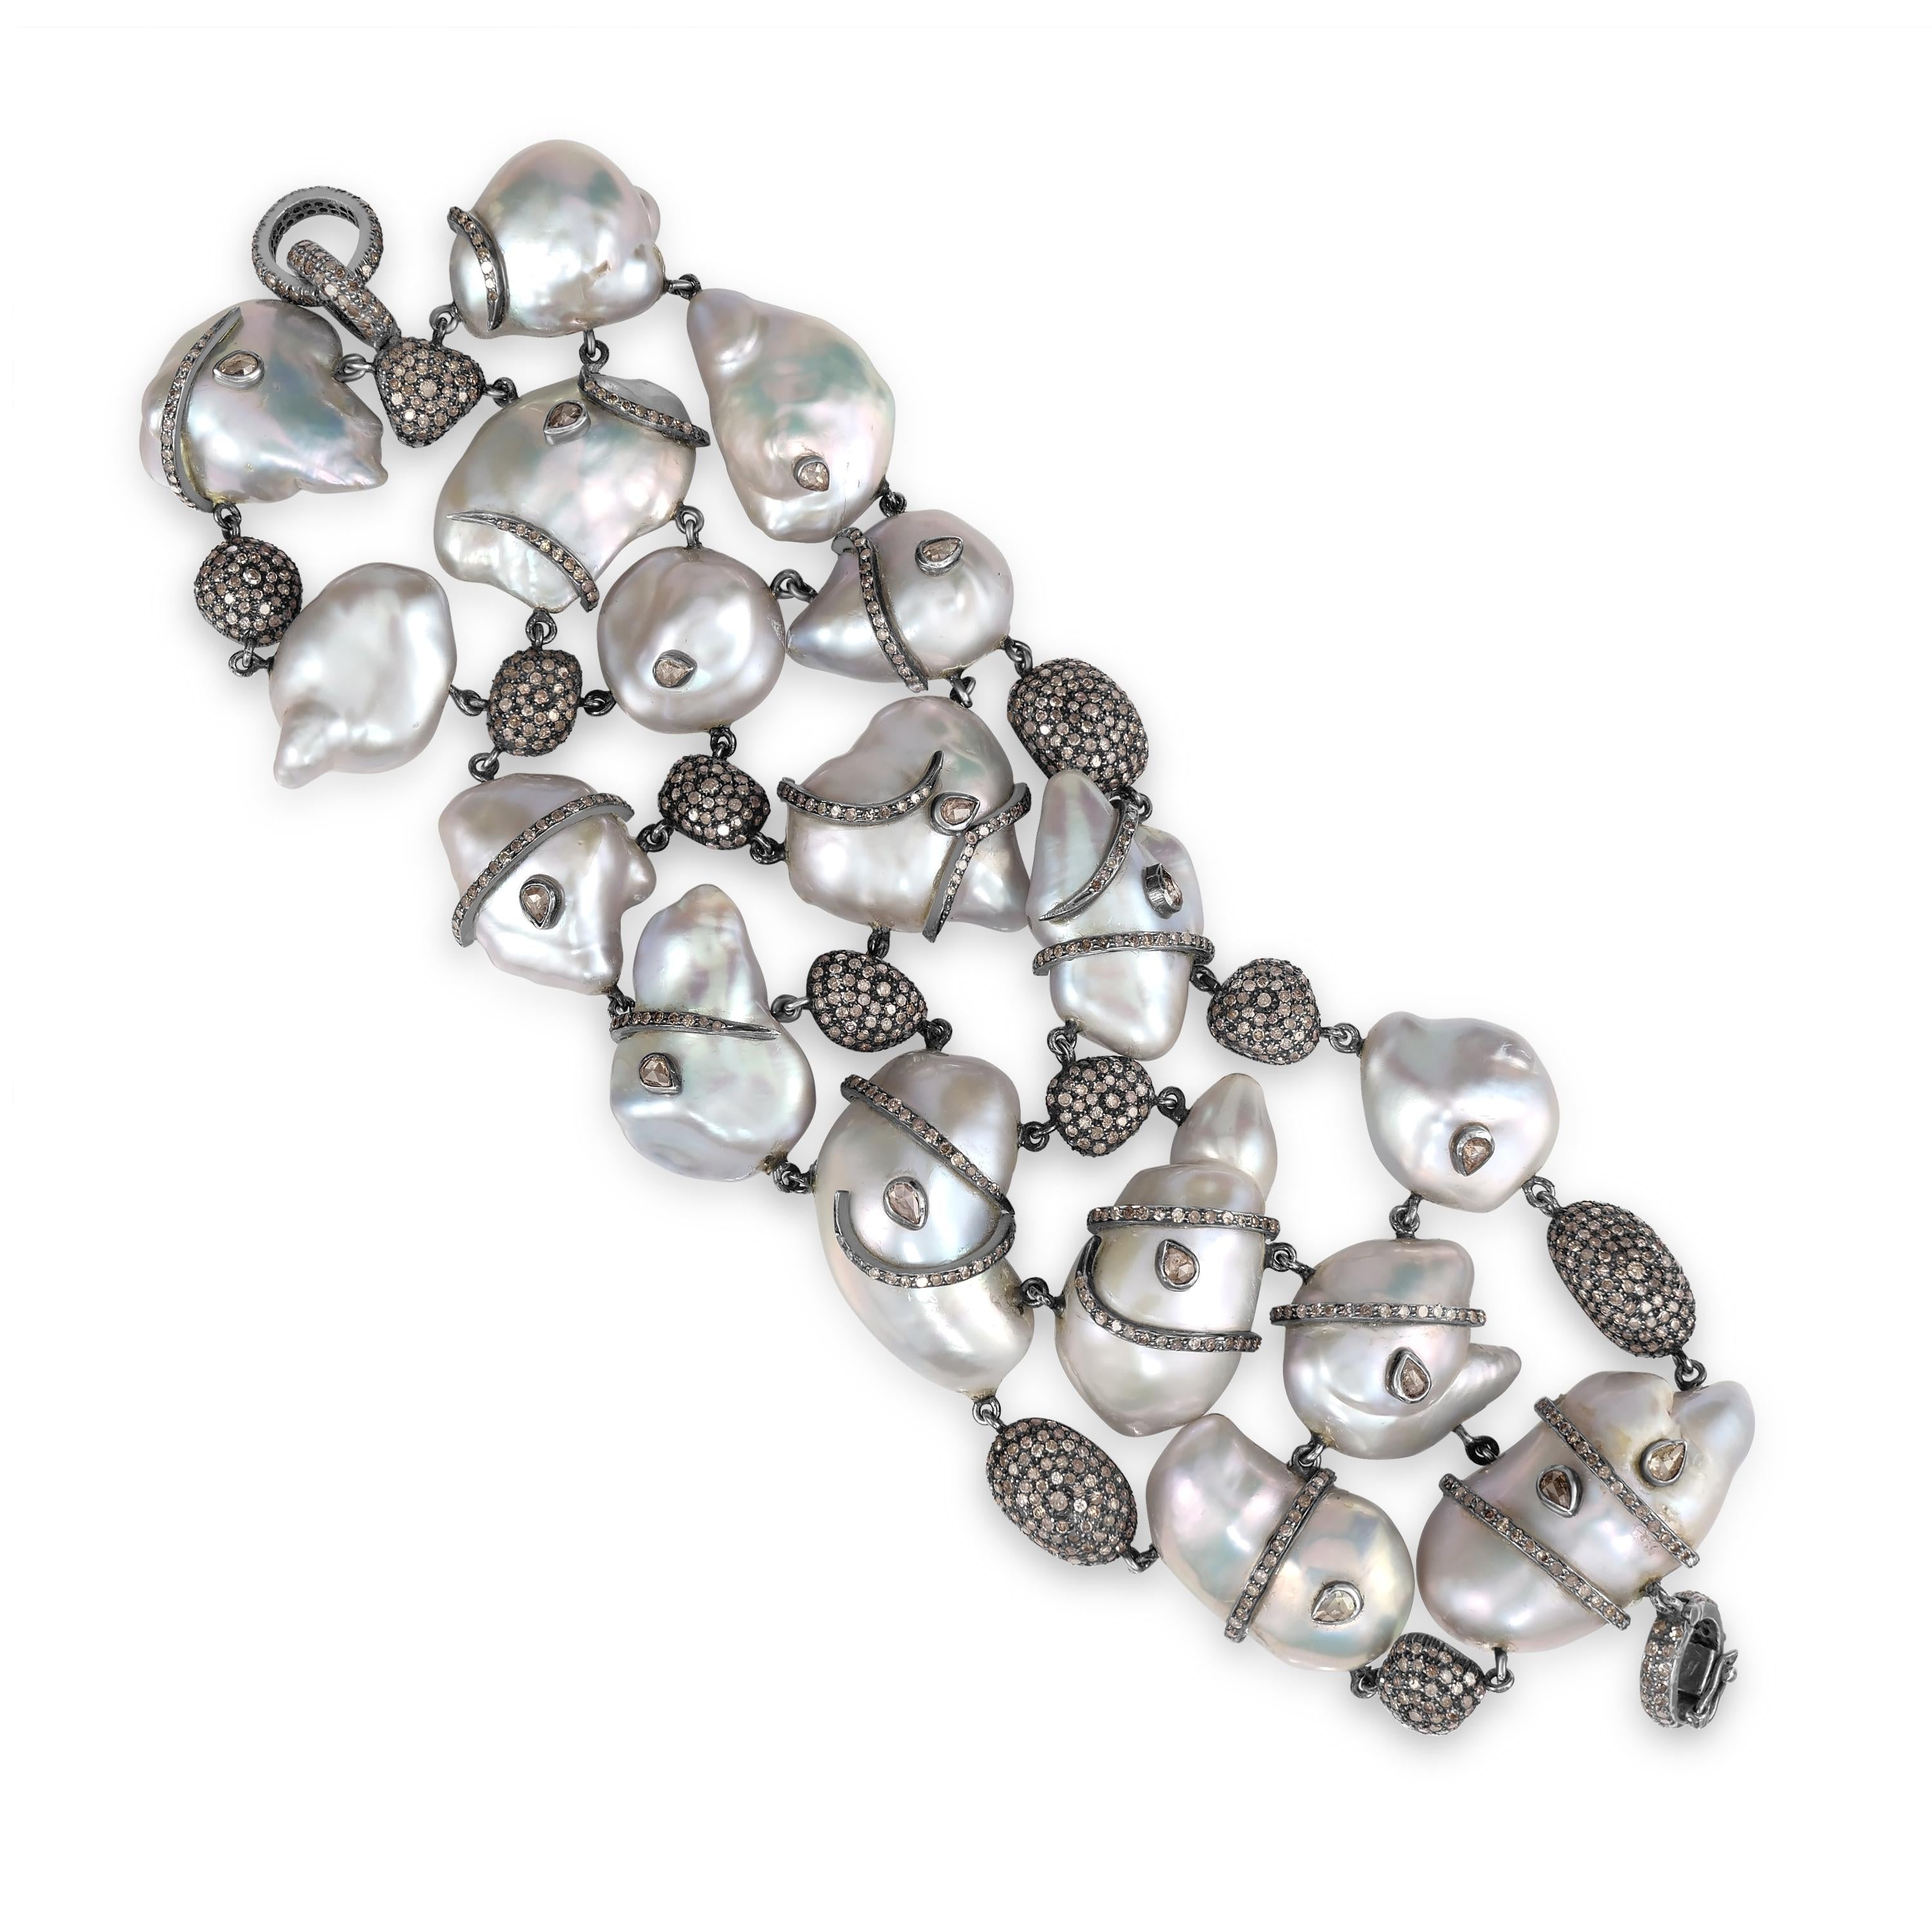 Wir präsentieren unser exquisites viktorianisches Perlen- und Diamantarmband, ein luxuriöses Stück, das Eleganz und Raffinesse ausstrahlt.

Dieses atemberaubende, mit viel Liebe zum Detail gefertigte Armband besteht aus herzförmigen Perlen, die von